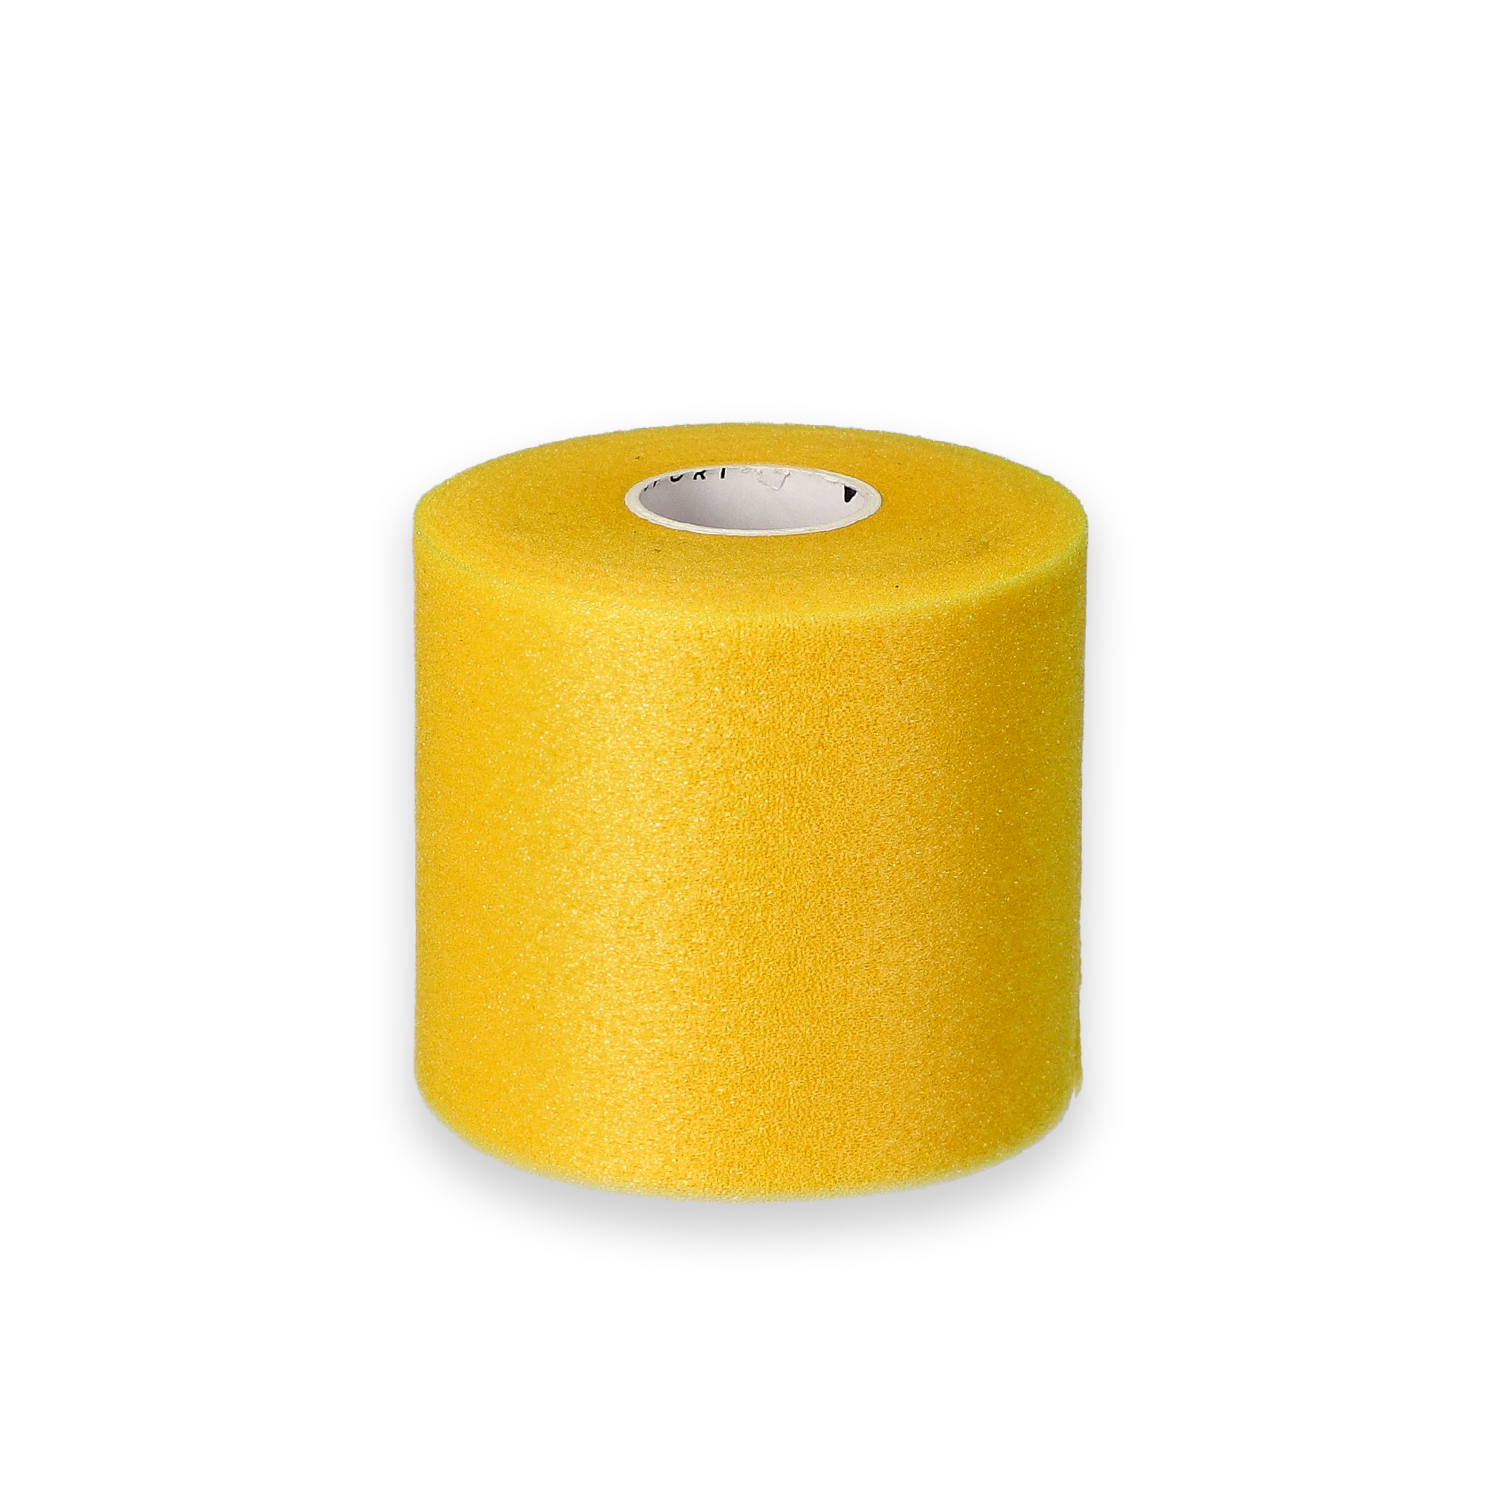 Podkład pod taping yellowWRAP - żółty7cm x 27m opakowanie 6 szt.